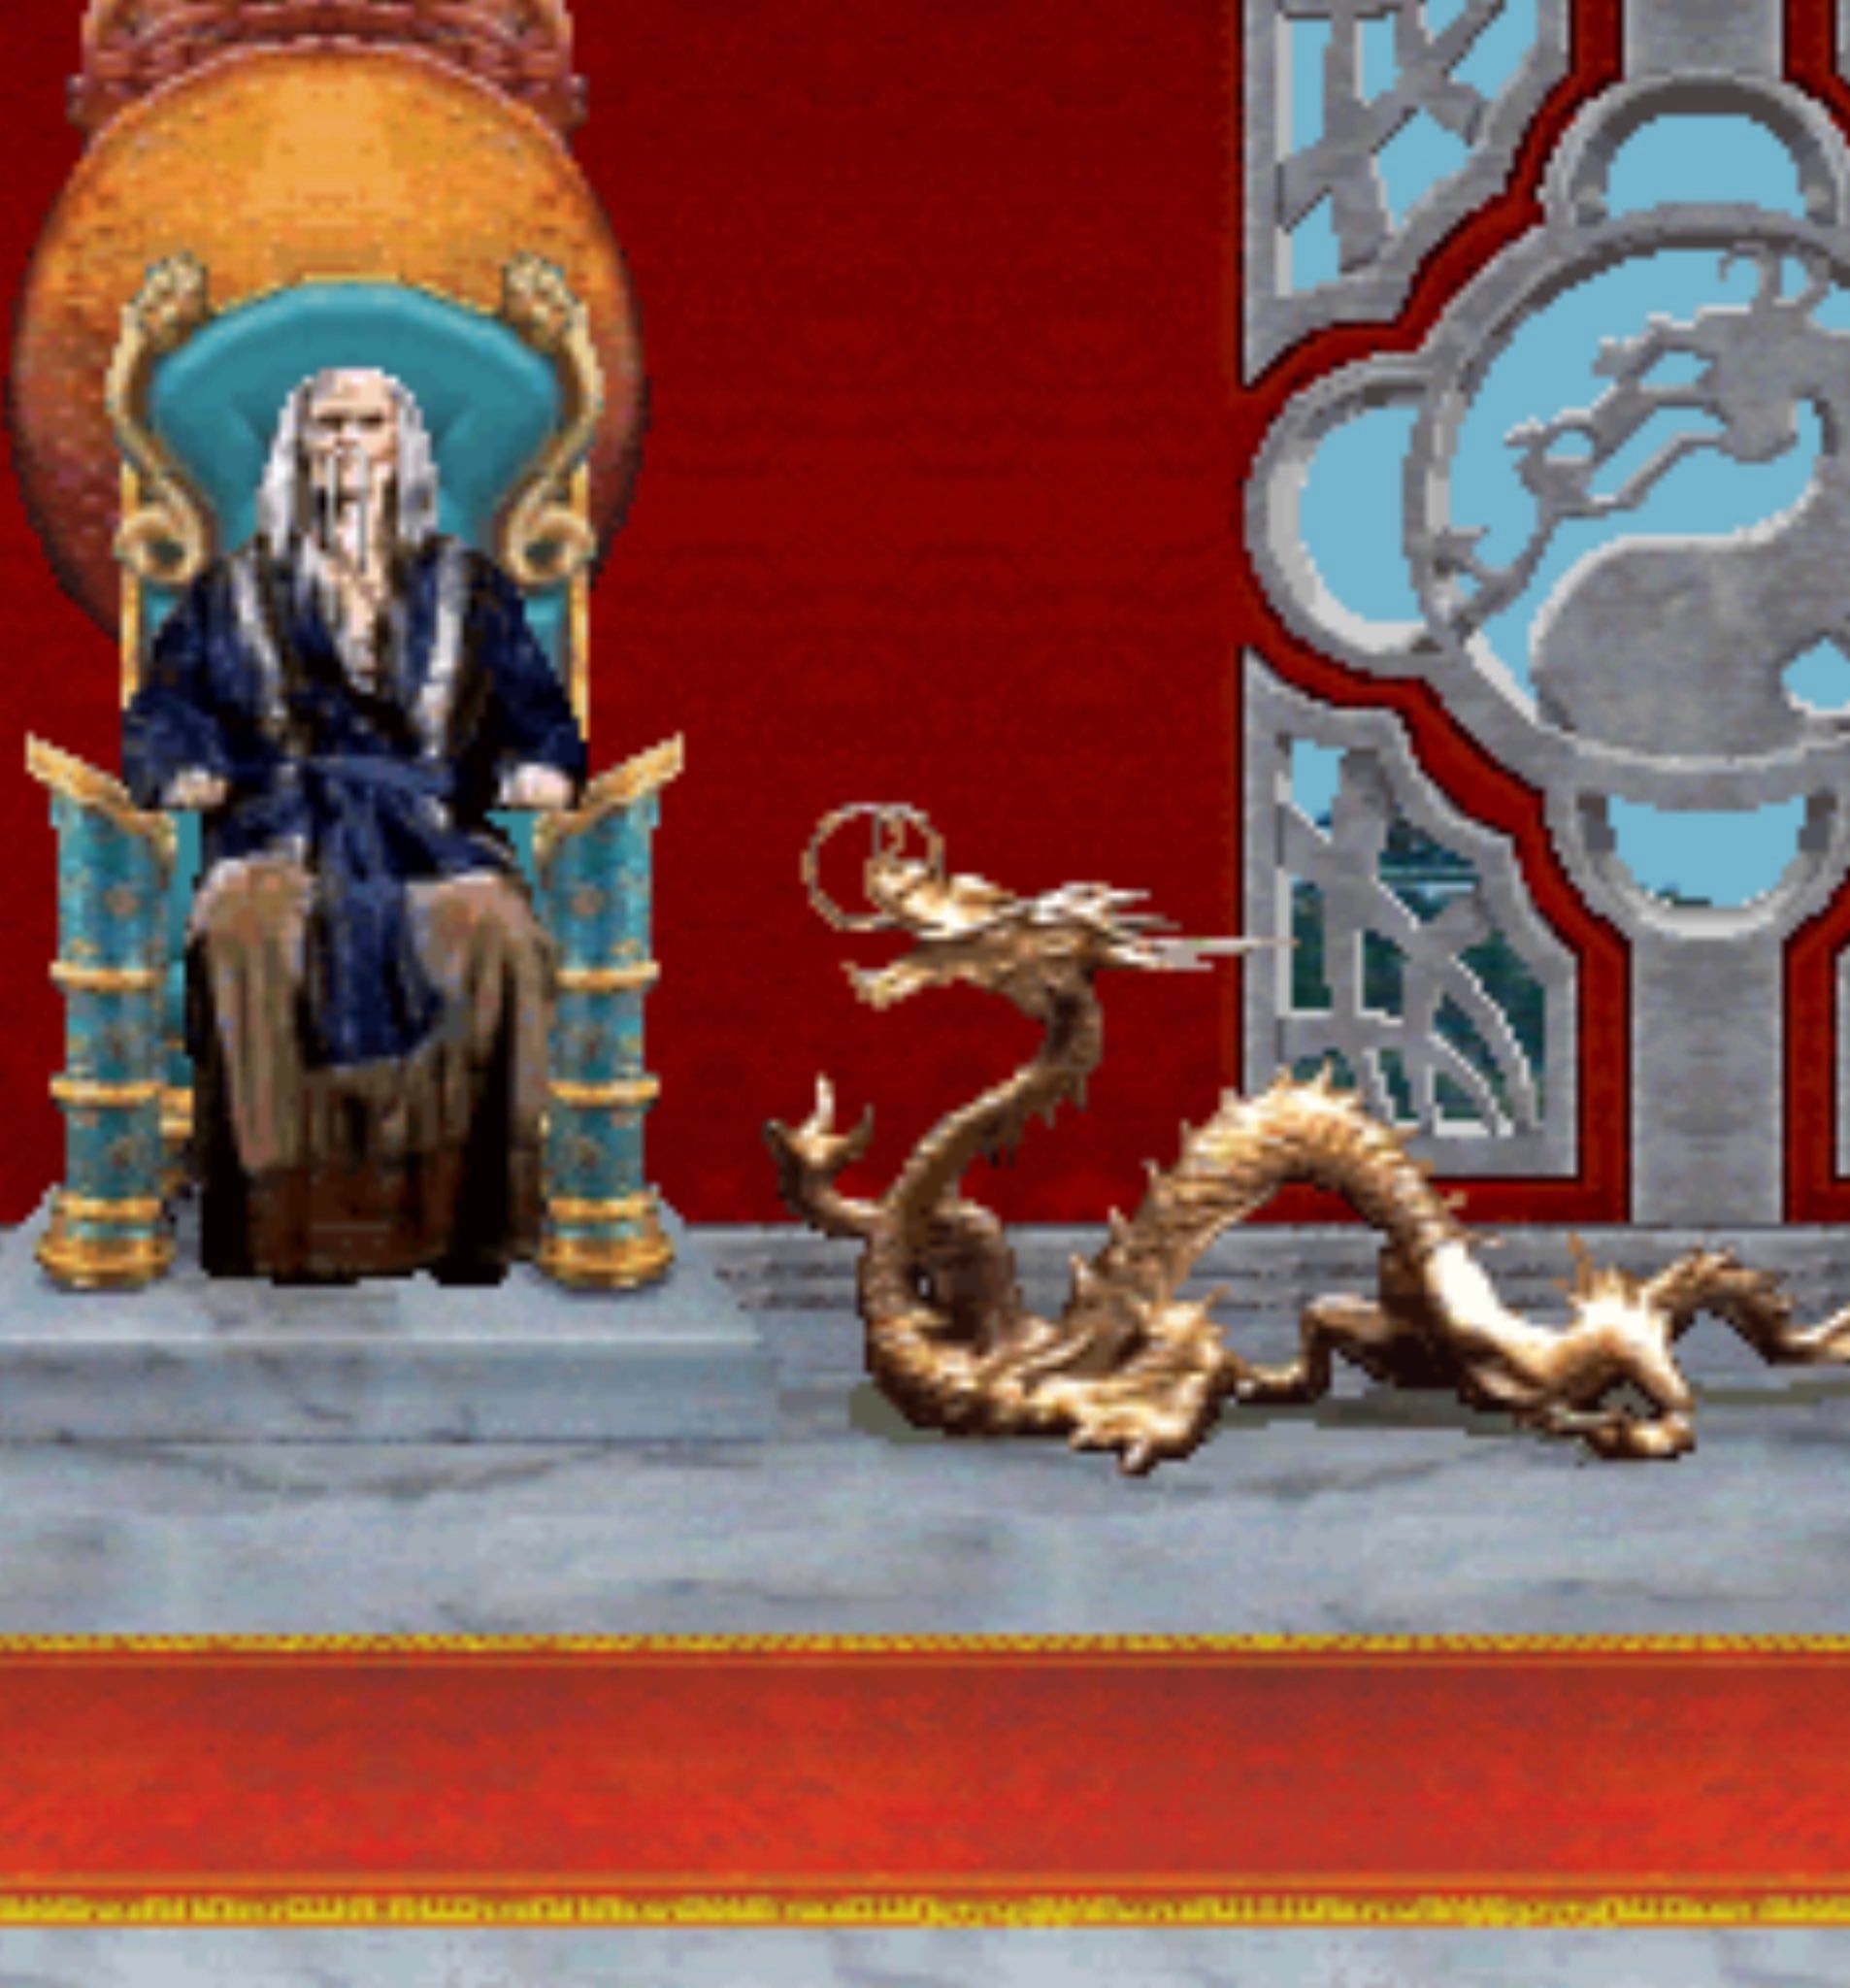 Оцифрованная статуэтка дракона в игре. Источник: твиттер